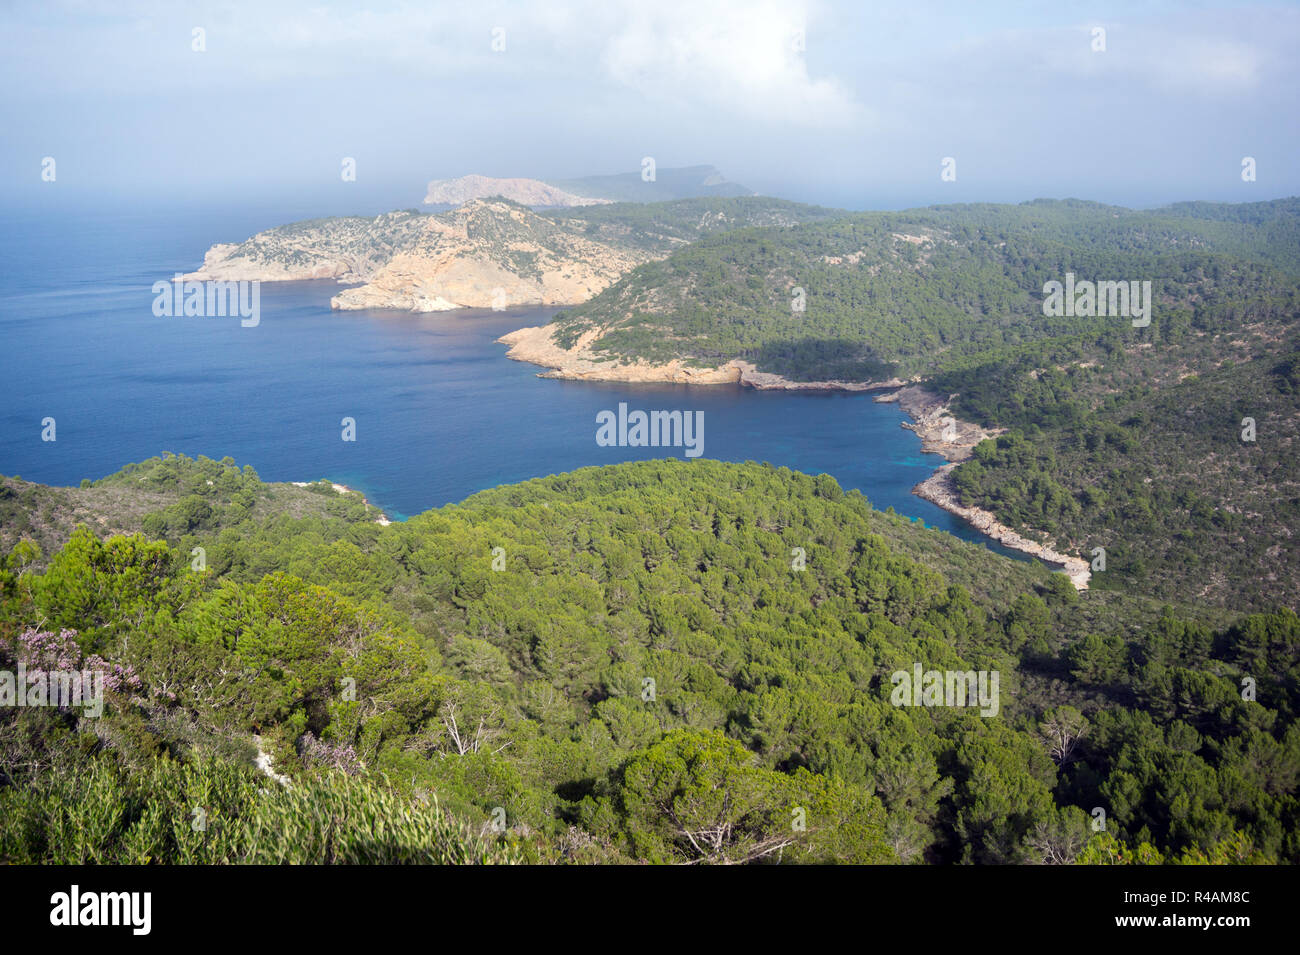 Vista panorámica del Parque Nacional de Cabrera, Islas Baleares España. Foto de stock